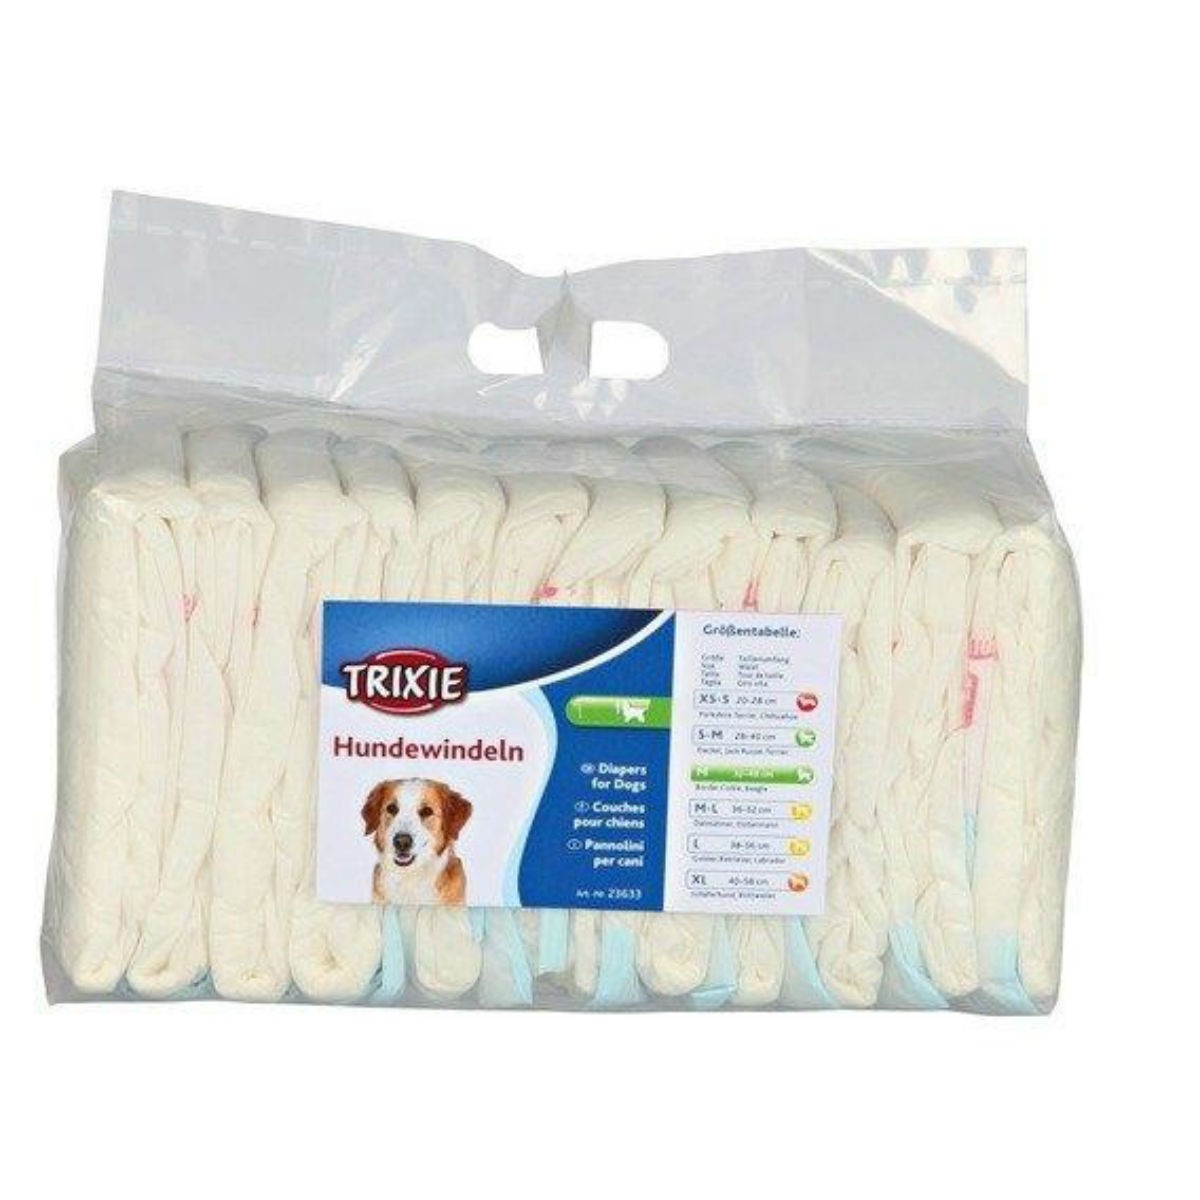 Trixie paper diaper size ML 12pcs